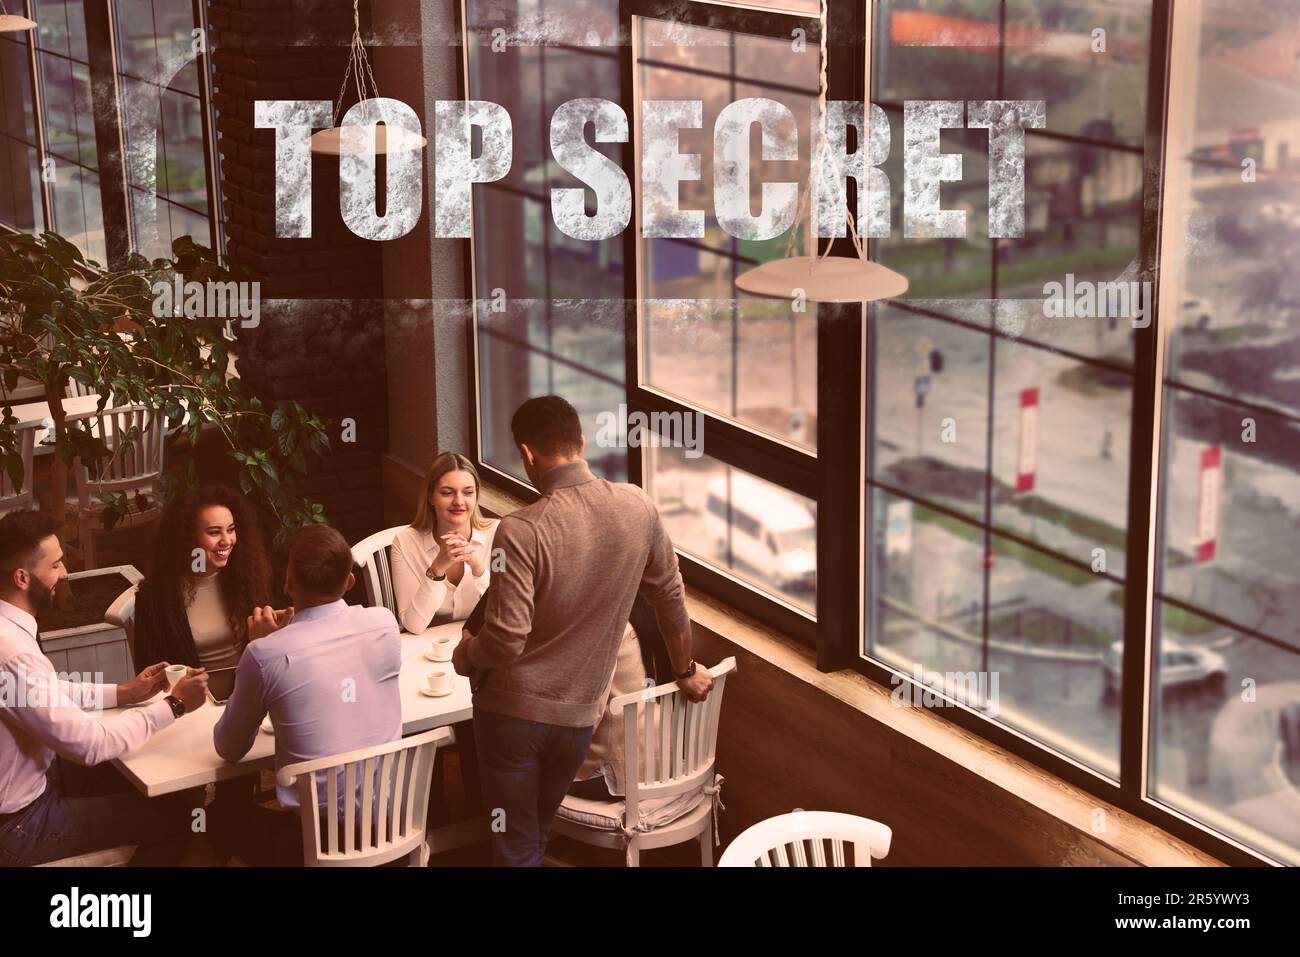 Geheime Informationen. Stempeln Sie Top Secret auf ein Foto von Menschen im Restaurant Stockfoto